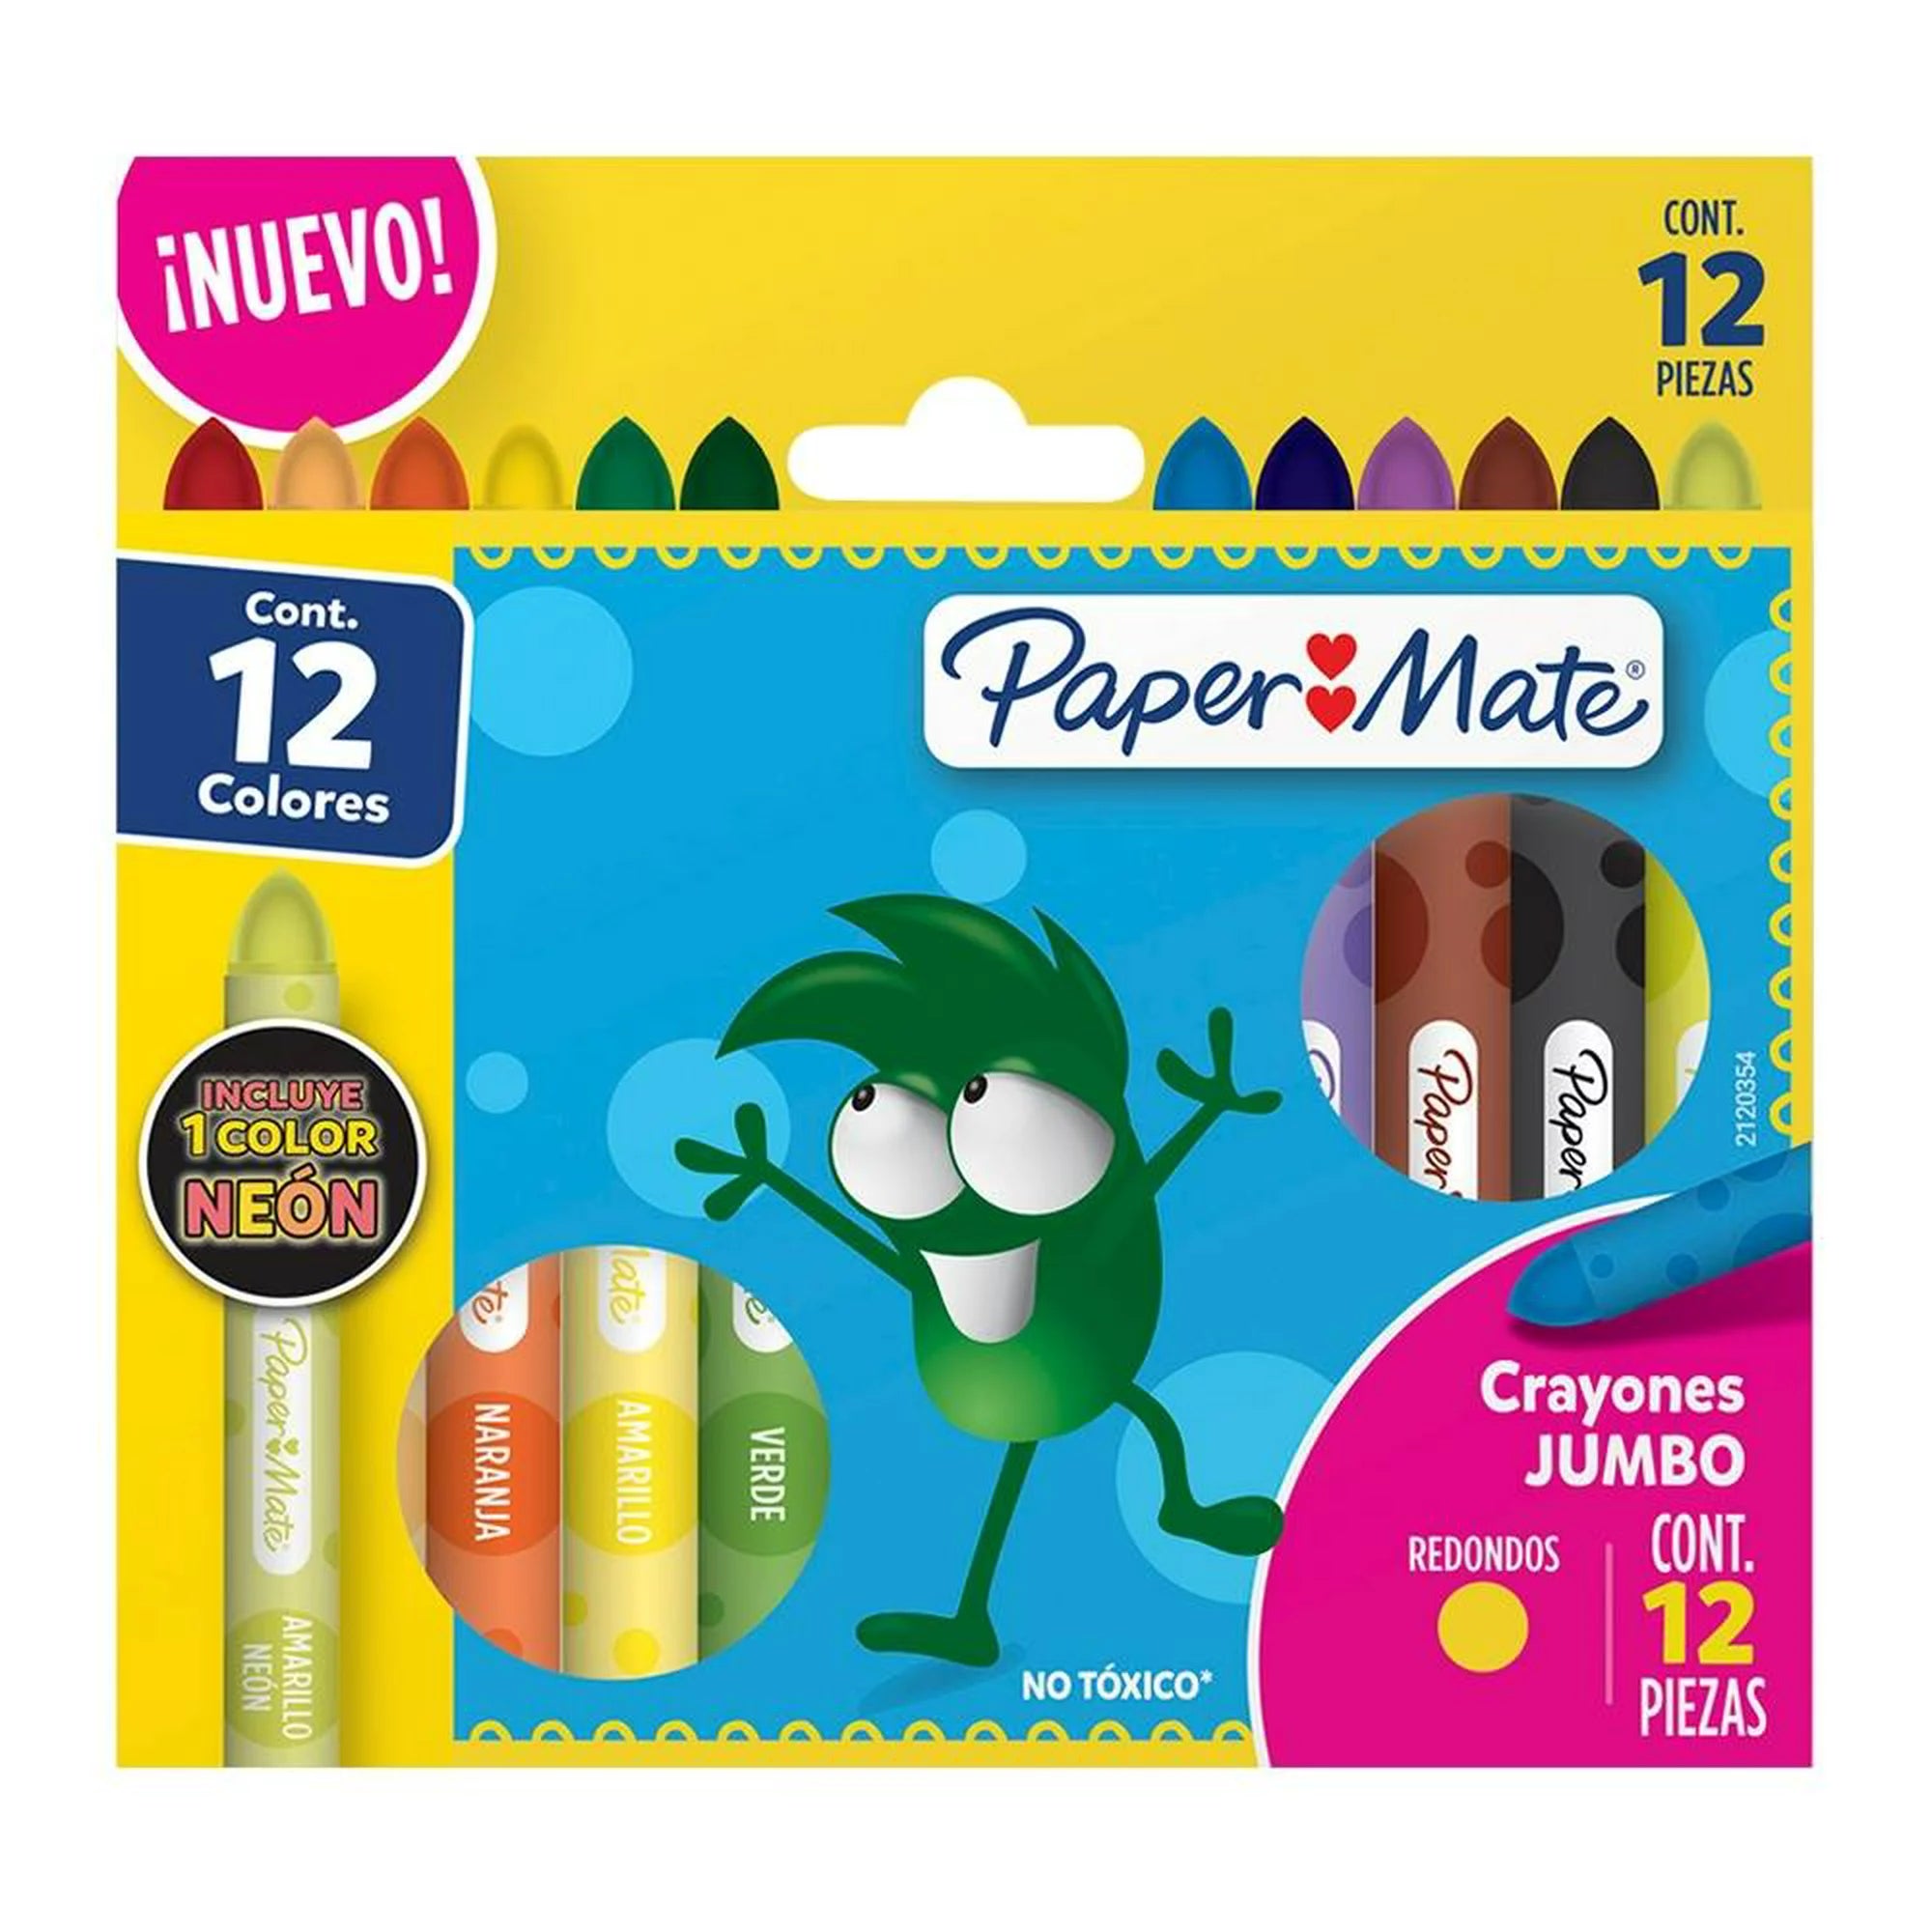 Crayones De Colores Paper Mate Jumbo Redondos 12 Piezas